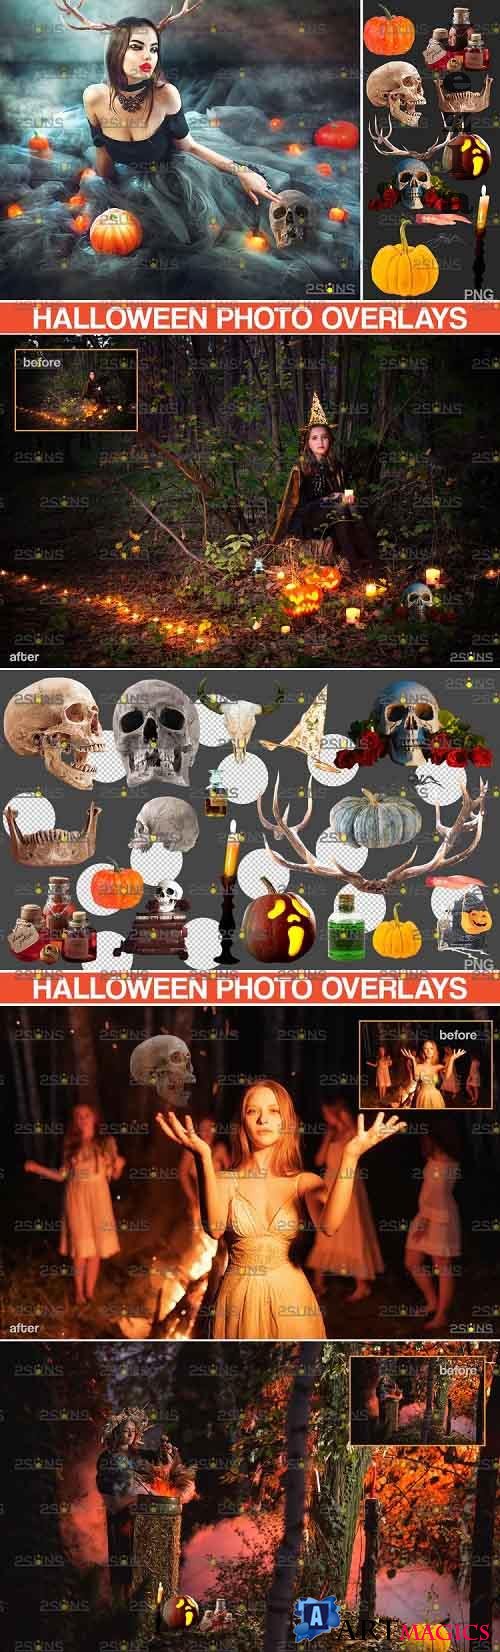 Halloween clipart & Photoshop overlay Halloween overlay - 782103